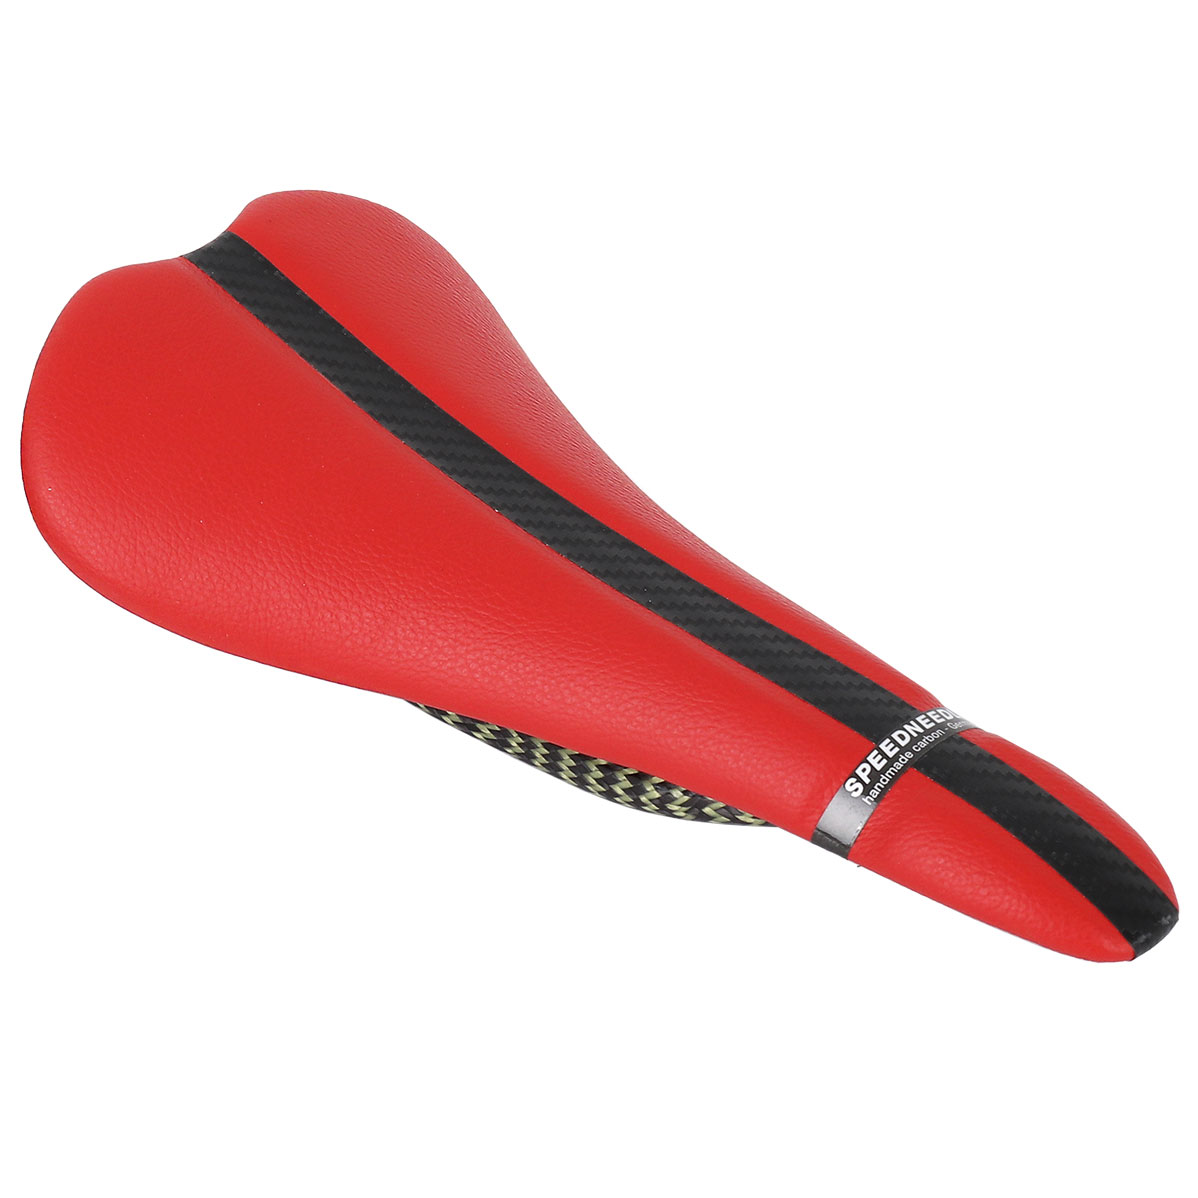 Productfoto van Tune Speedneedle 20Twenty Leather Carbon Saddle - red